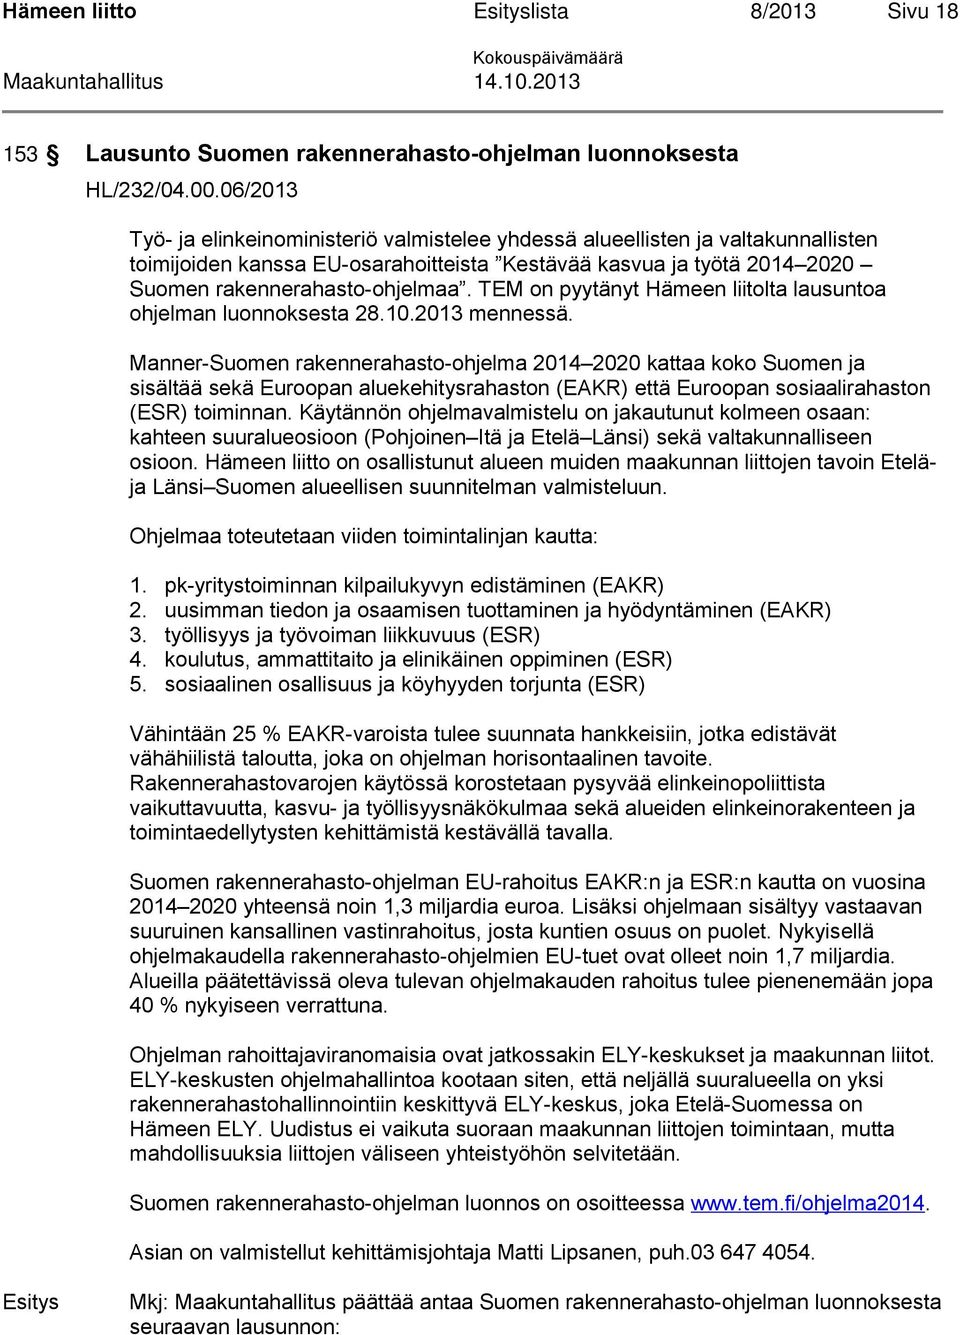 TEM on pyytänyt Hämeen liitolta lausuntoa ohjelman luonnoksesta 28.10.2013 mennessä.